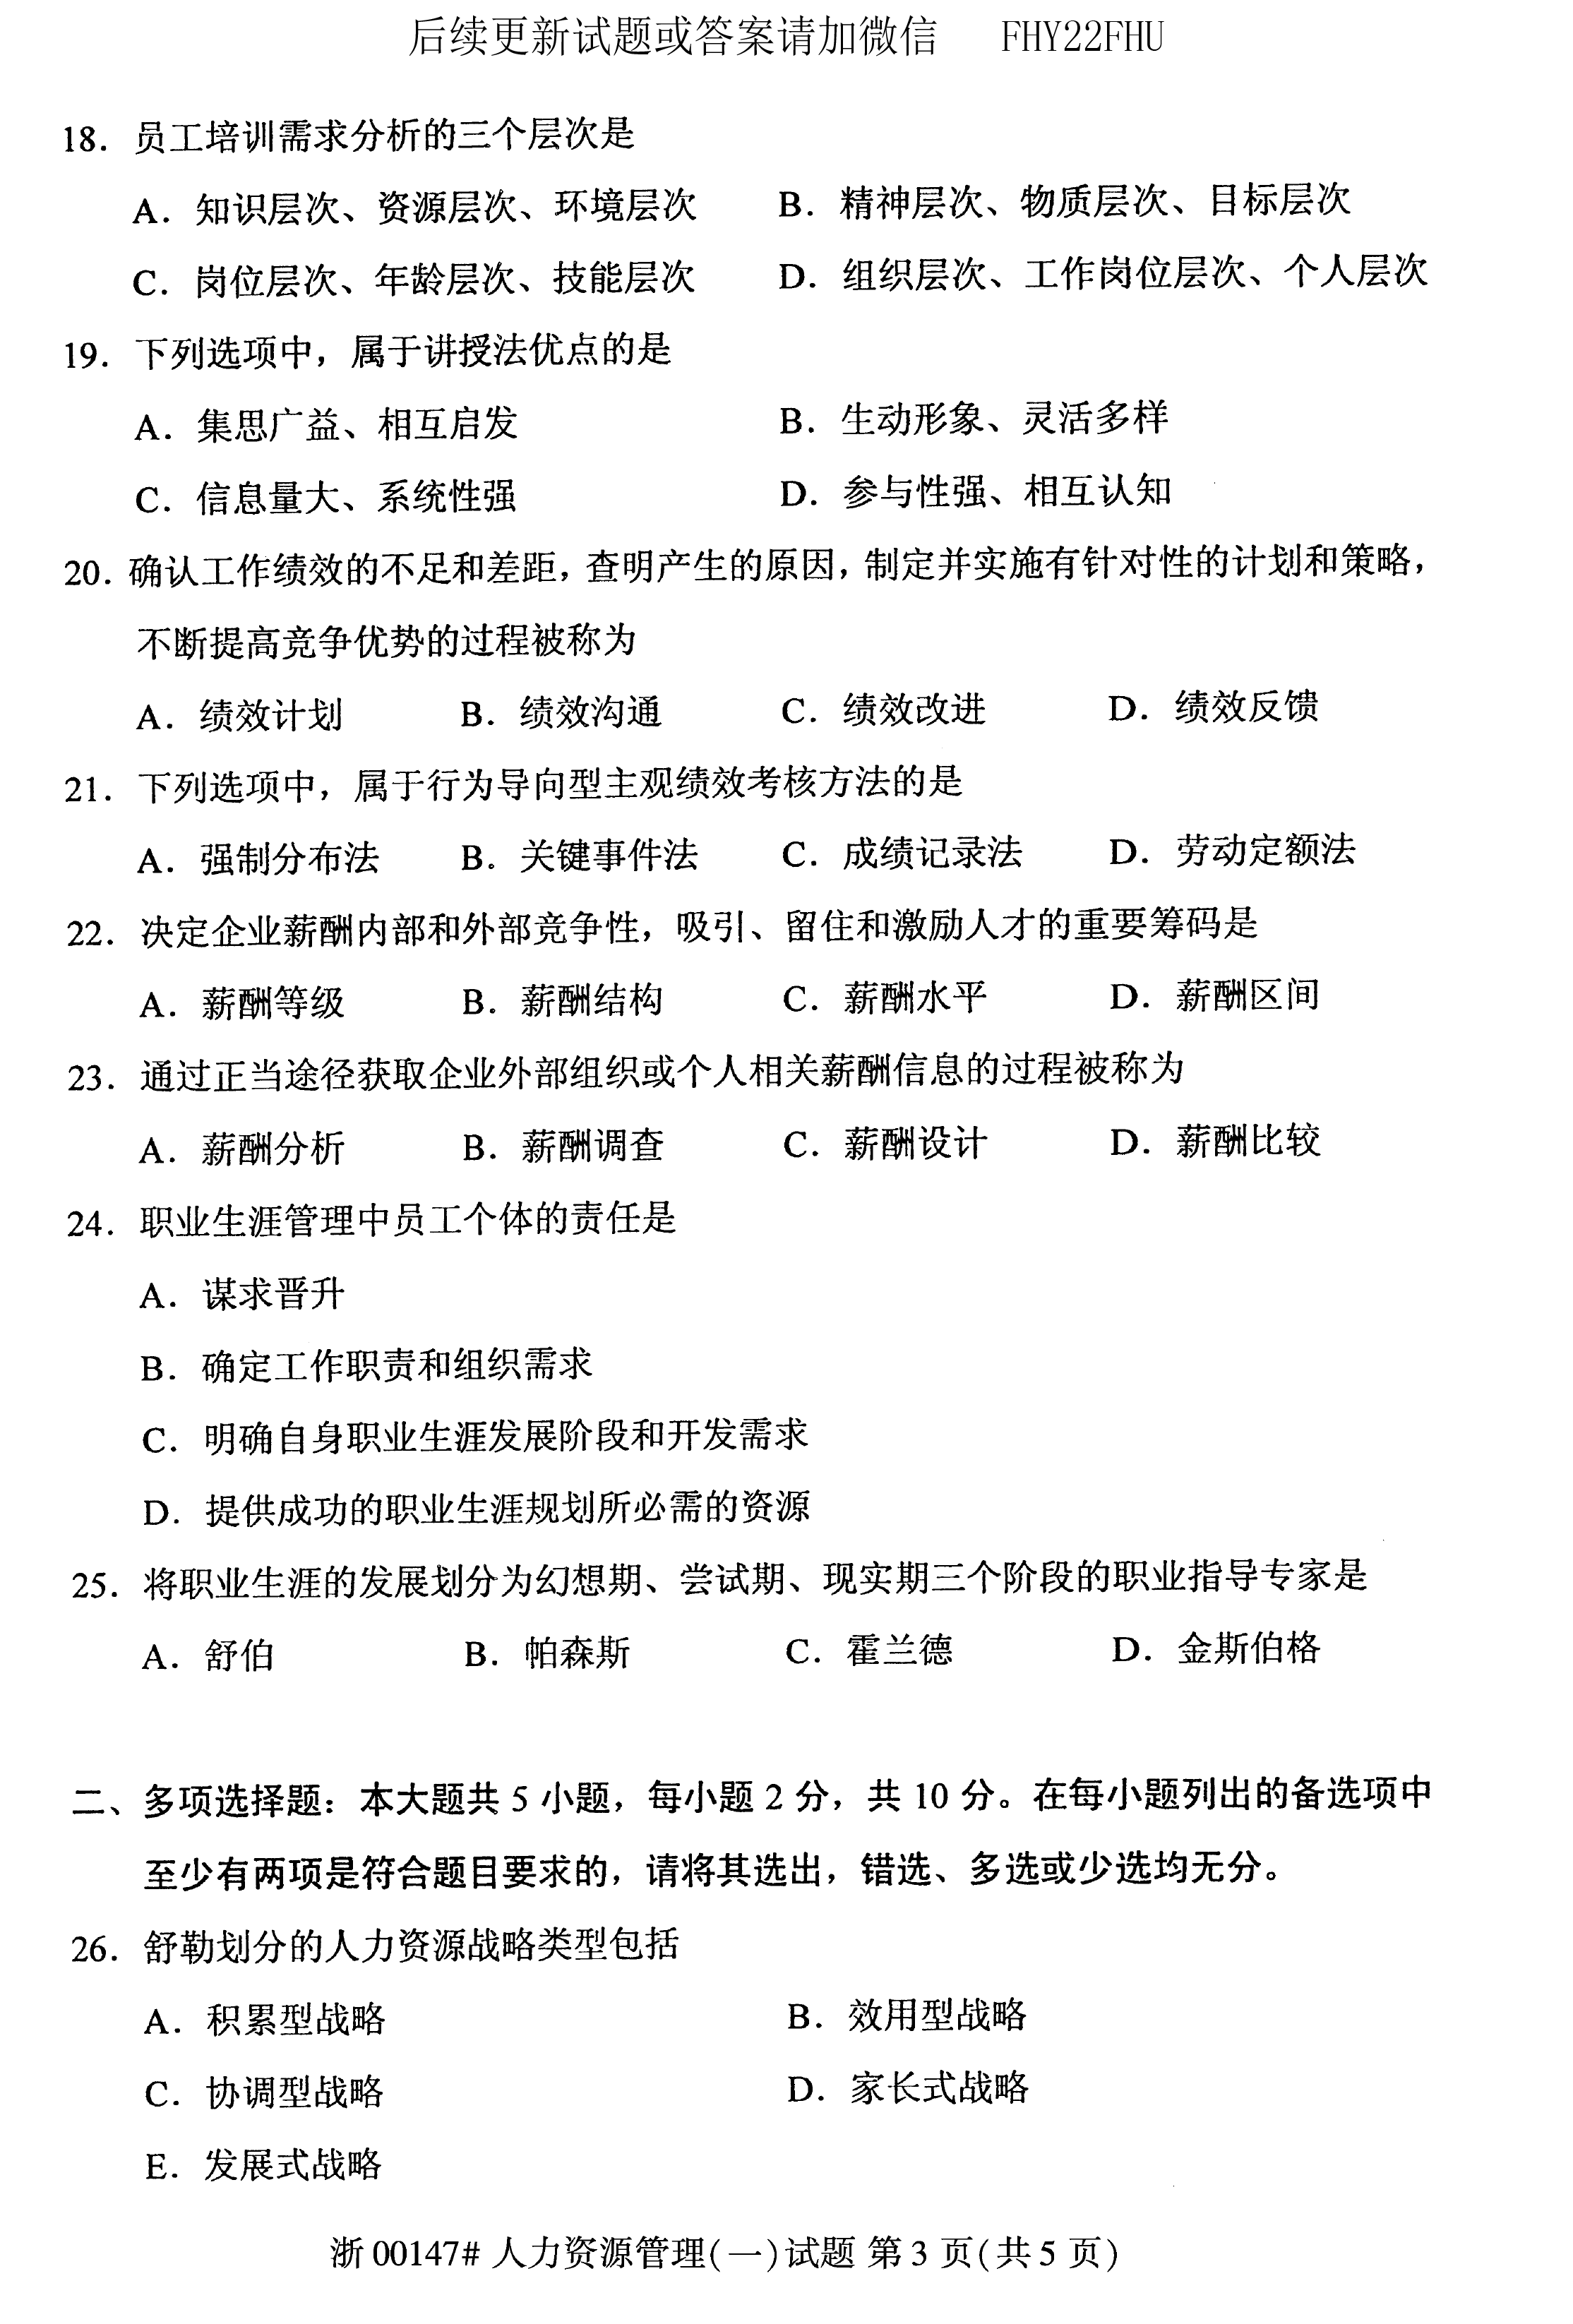 贵州省2019年10月自学考试00147人力资源管理真题及答案